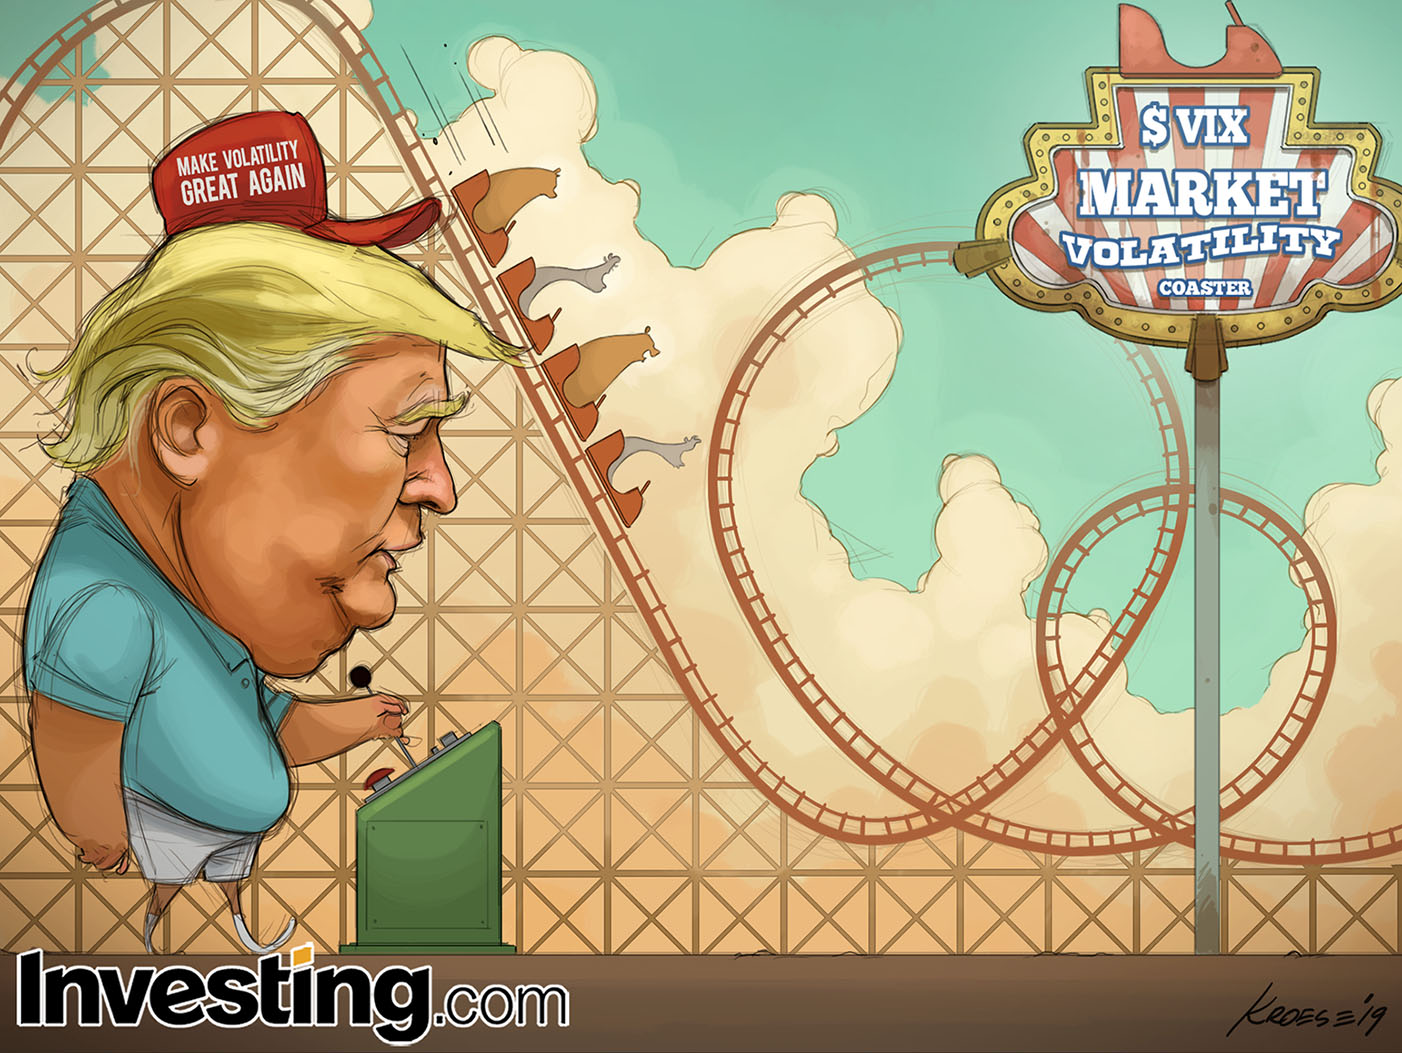 Tin tức về cuộc chiến thương mại của Trump khiến các thị trường biến động mạnh